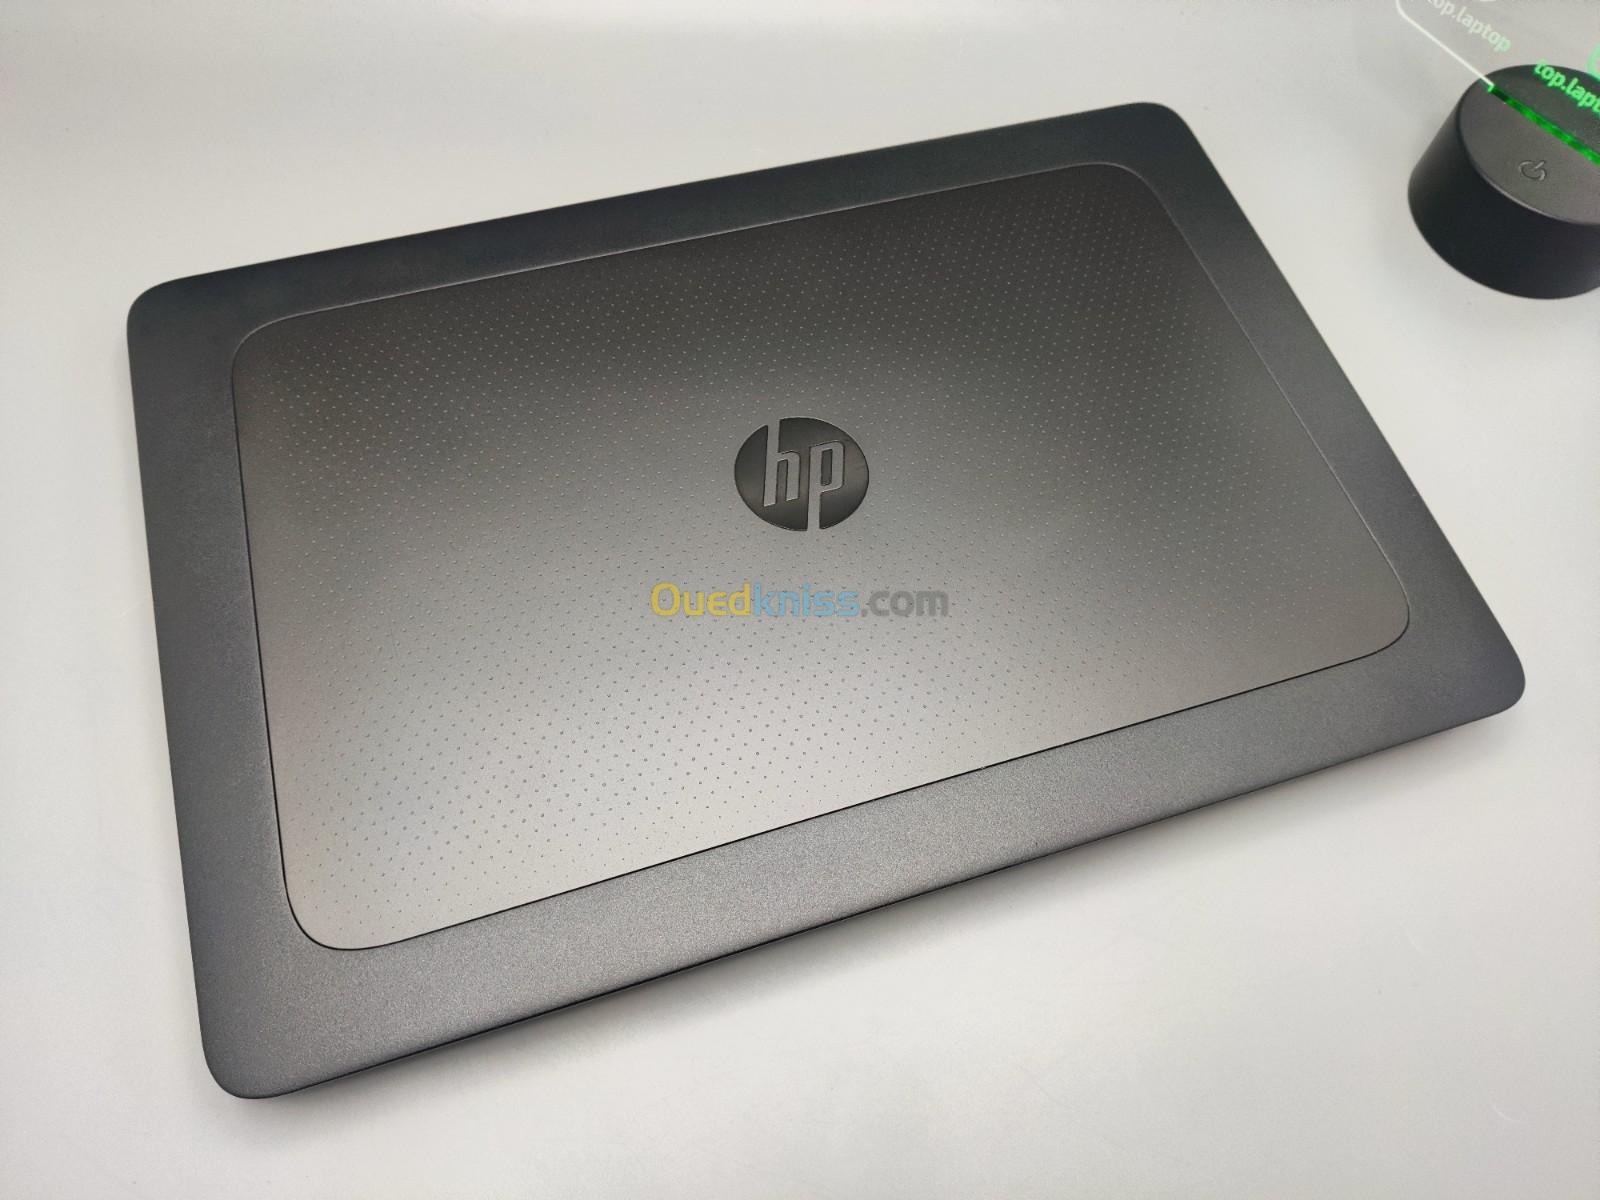 HP ZBOOK G3 Workstation i7 6700HQ NVIDIA QUADRO M2000 16GB 256GB SSD+500GB HDD 15.6" FULL HD 